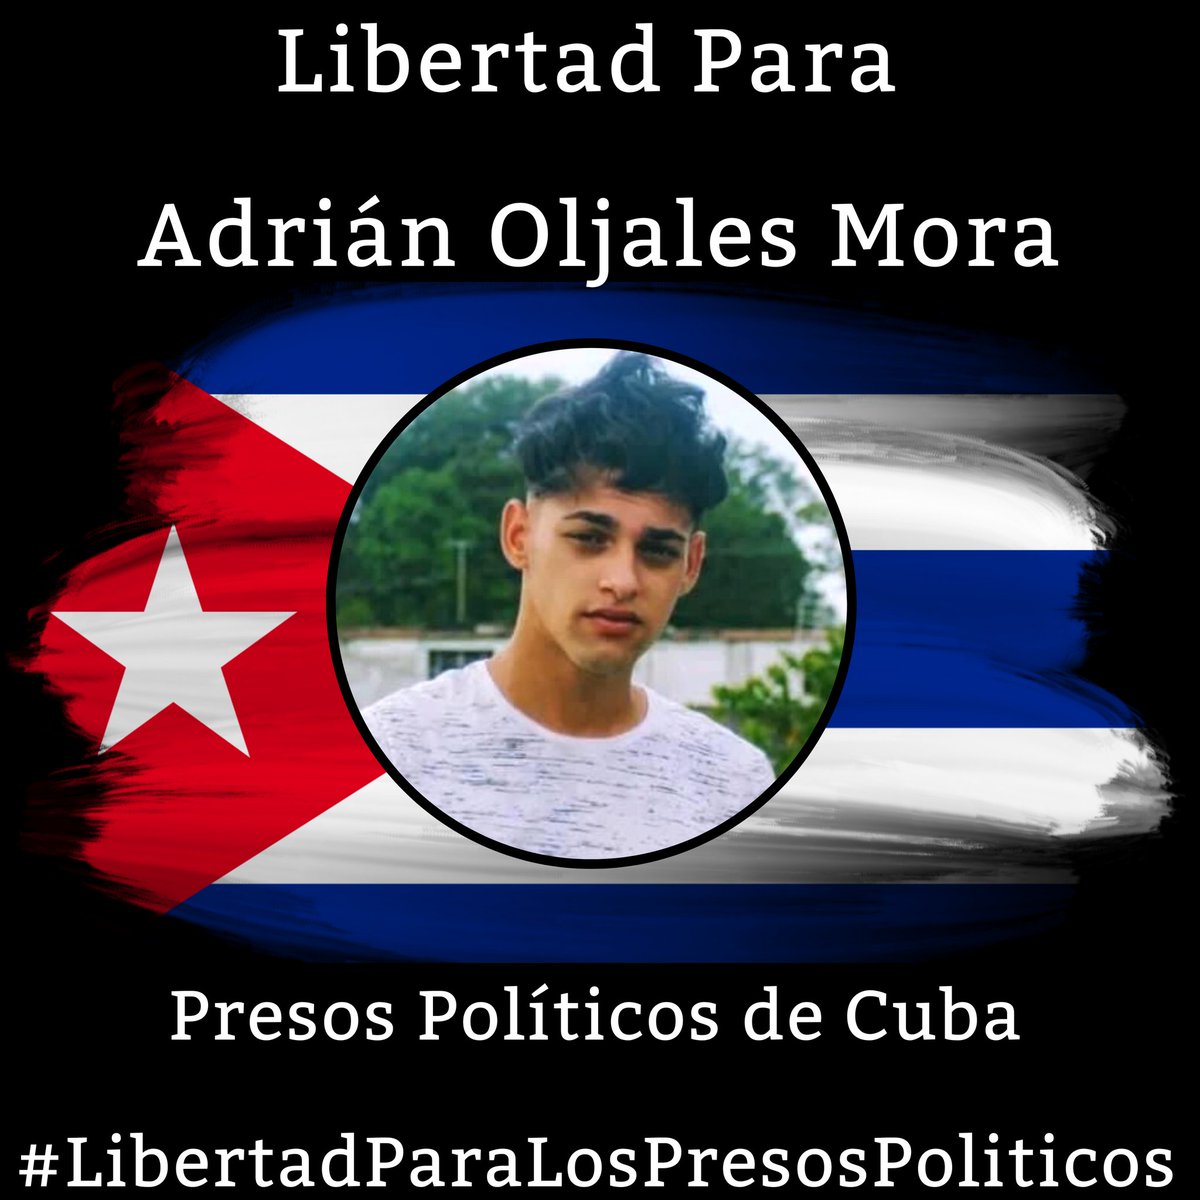 #Twittazo Libertad para Adrián Oljales Mora.
.
“Sin aire, la tierra muere. Sin libertad, como sin aire propio y esencial, nada vive.” -José Martí-
.
.
.
#HastaQueSeanLibres 
#PresosPoliticosDeCuba
#LibertadYJusticiaParaCuba